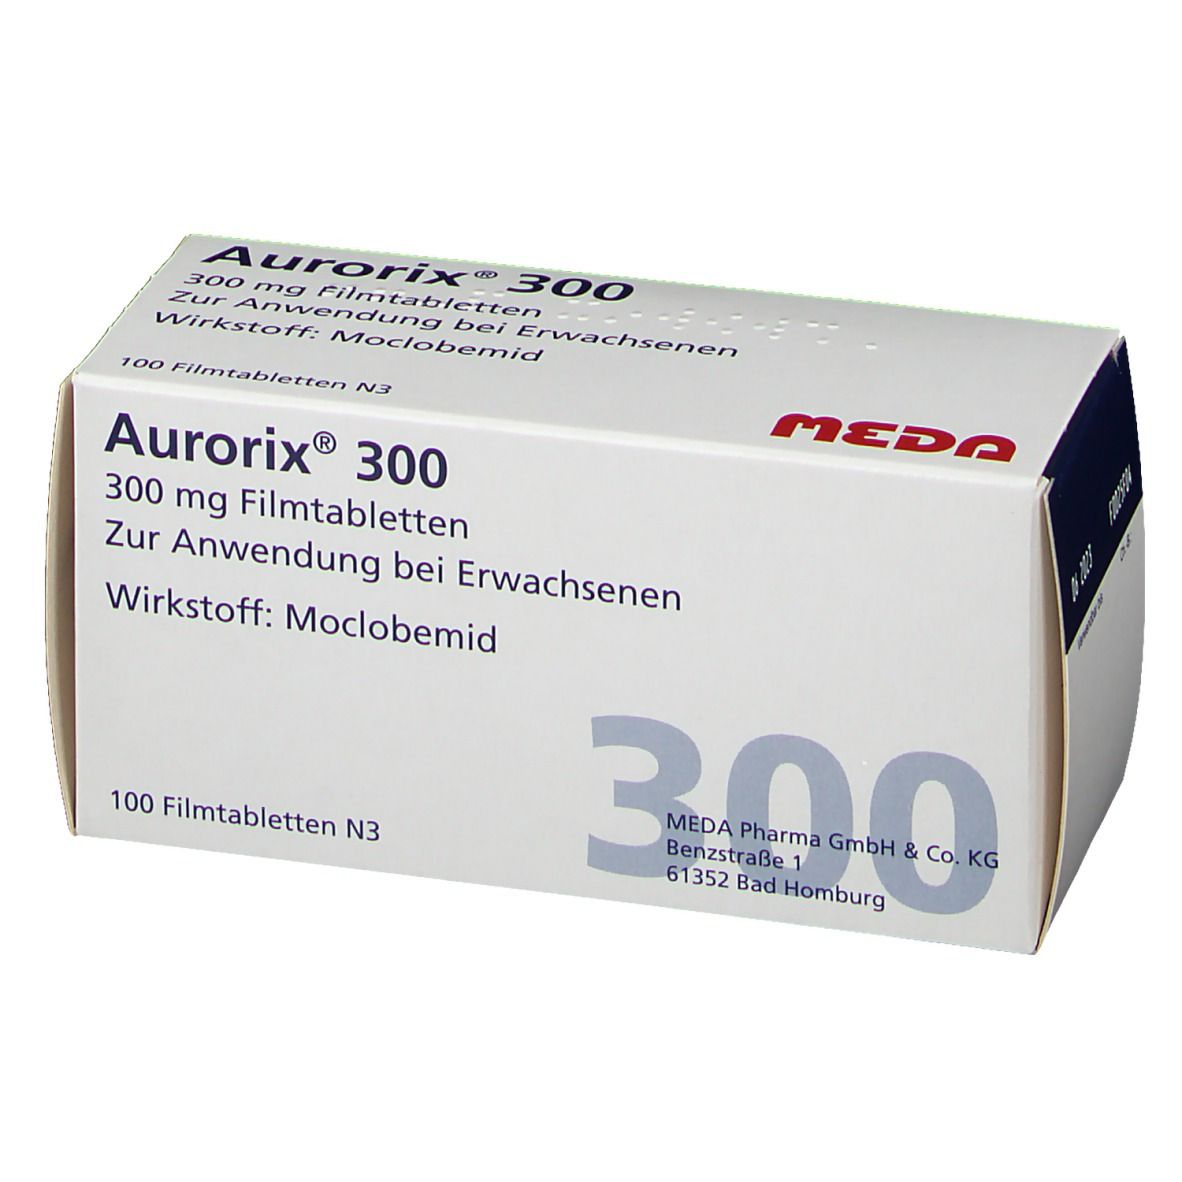 Aurorix® 300